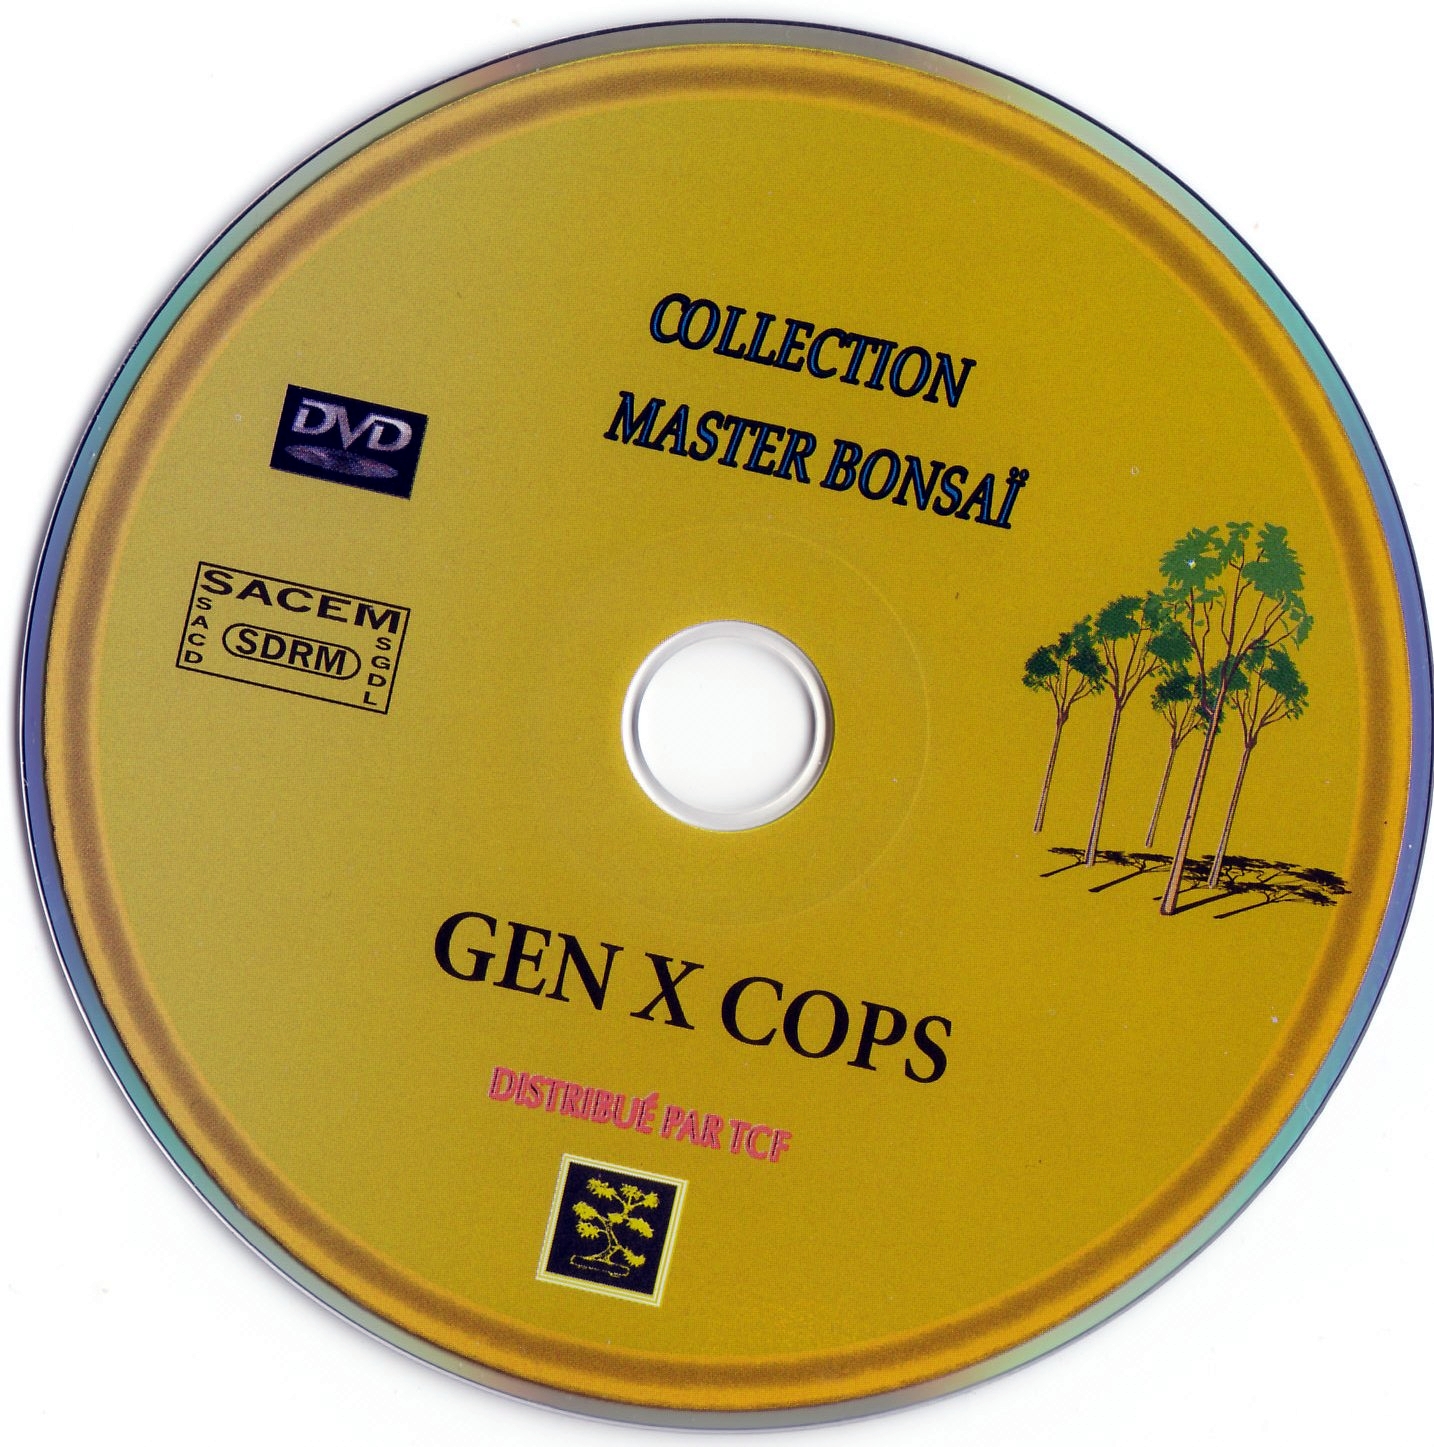 Gen X cops v2